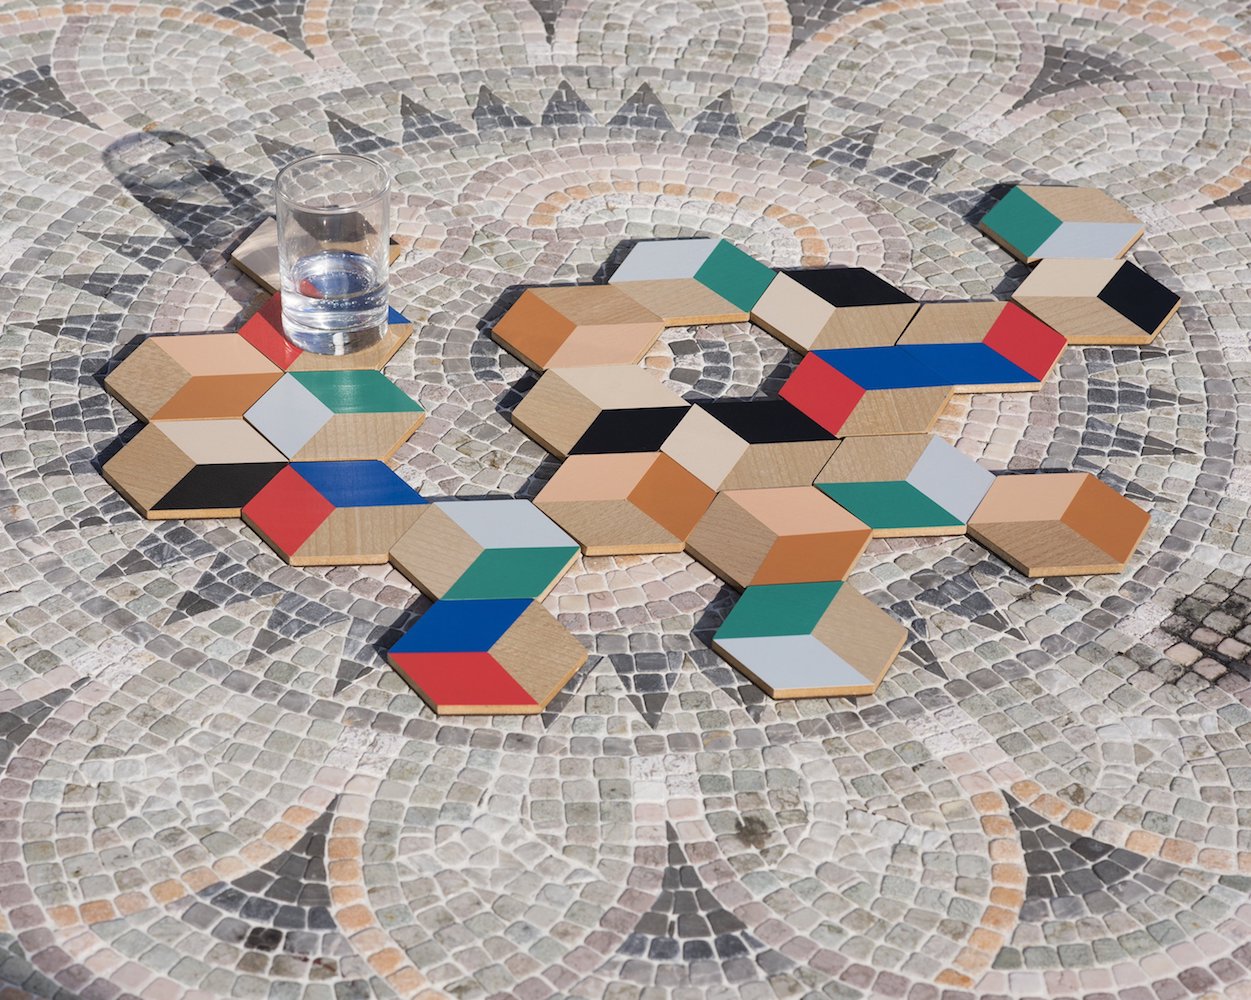 Table Tiles Coasters│Areaware│Onderzetters Zwart/Beige│diverse sets gecombineerd op tegelvloer